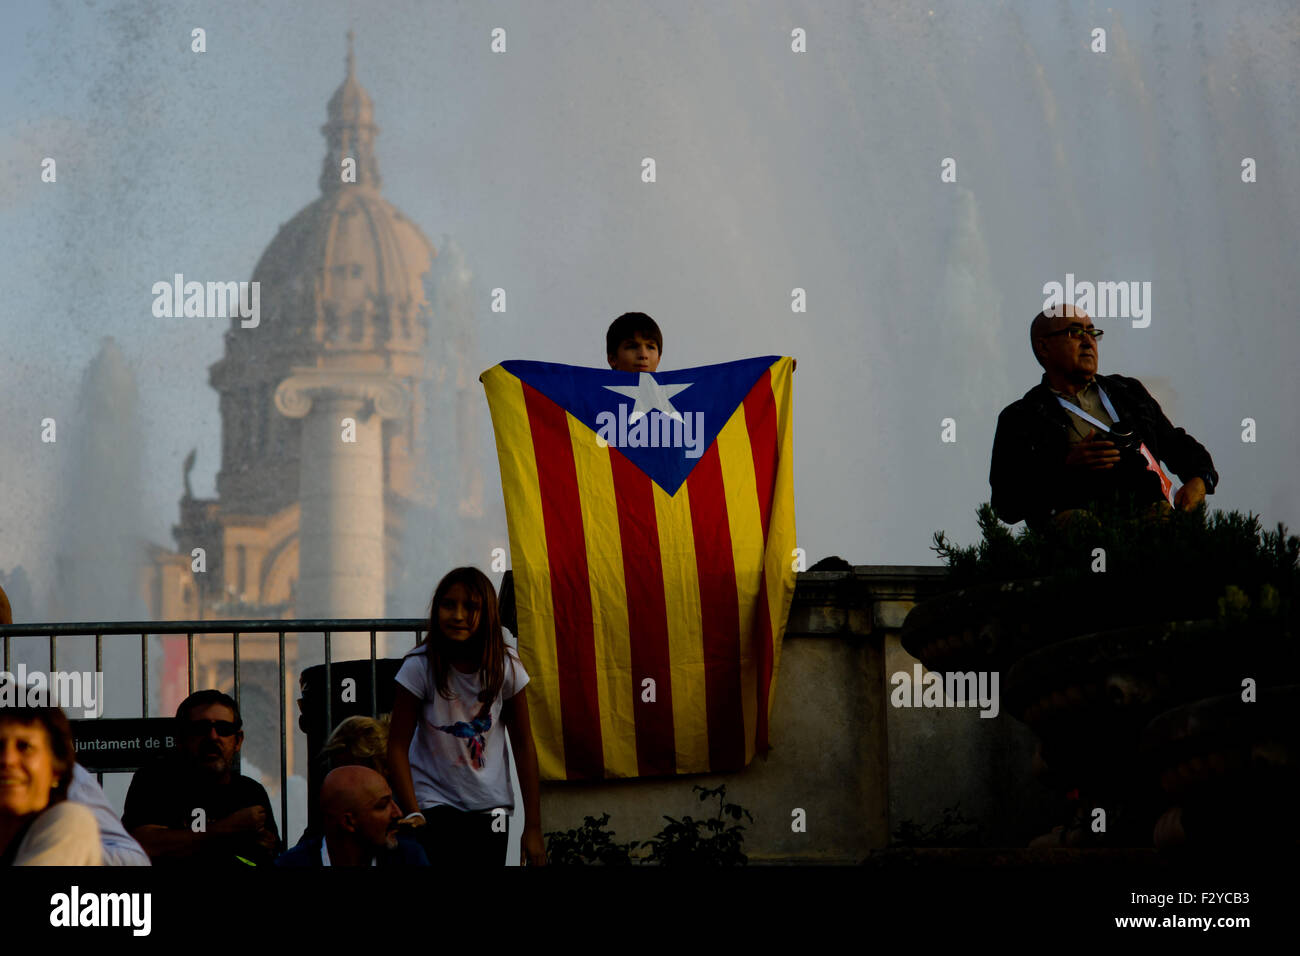 Barcelone, Catalogne, Espagne. 25 Septembre, 2015. Un garçon est titulaire d'un estelada drapeau indépendantiste catalan () au cours de la dernière campagne de rallye 'Junts pel Si' (ensemble pour Oui) à Barcelone le 25 septembre, 2015. Dimanche prochain auront lieu des élections régionales en Catalogne. Les sondages indiquent que l'indépendance parties pourraient obtenir la majorité absolue. Crédit : Jordi Boixareu/ZUMA/Alamy Fil Live News Banque D'Images